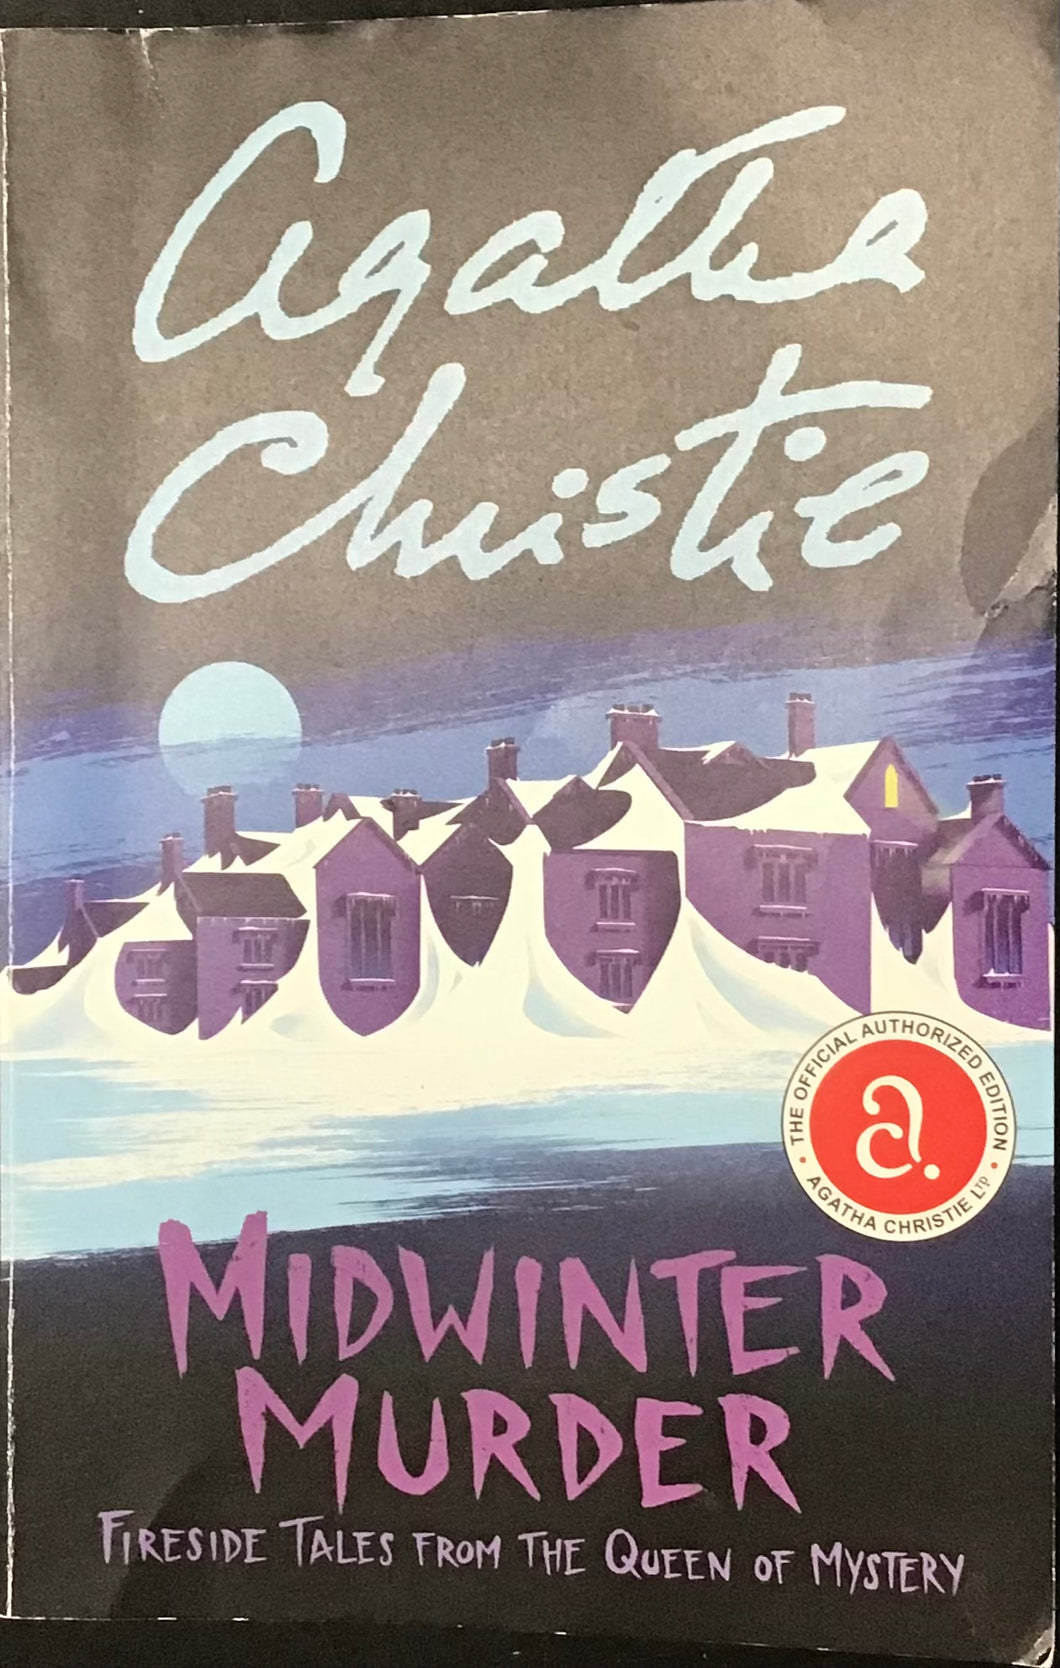 Midwinter Murder, Agatha Christie